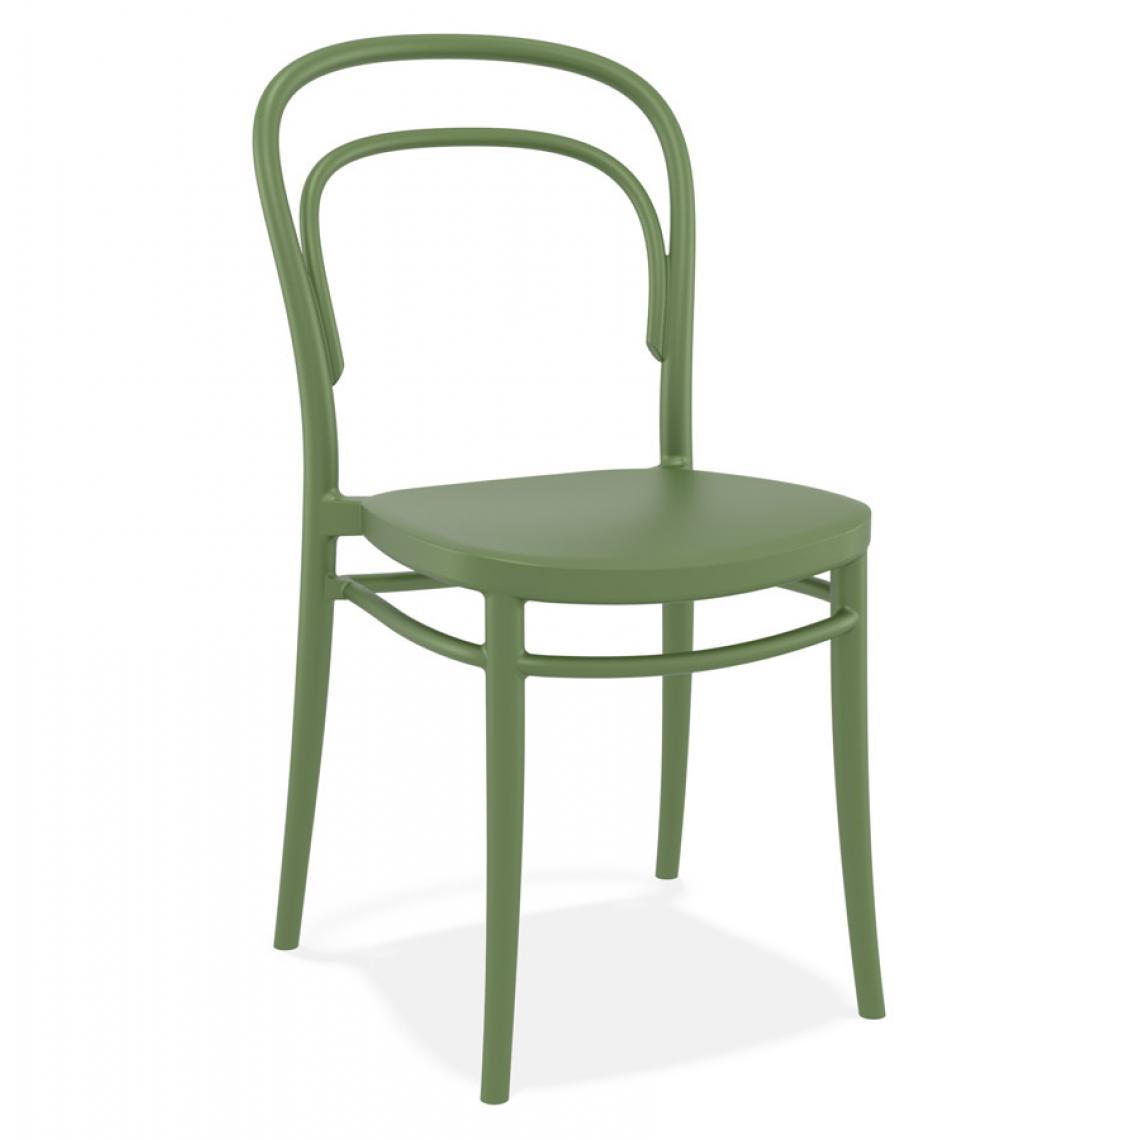 Alterego - Chaise empilable 'JAMAR' intérieur / extérieur en matière plastique verte - Chaises